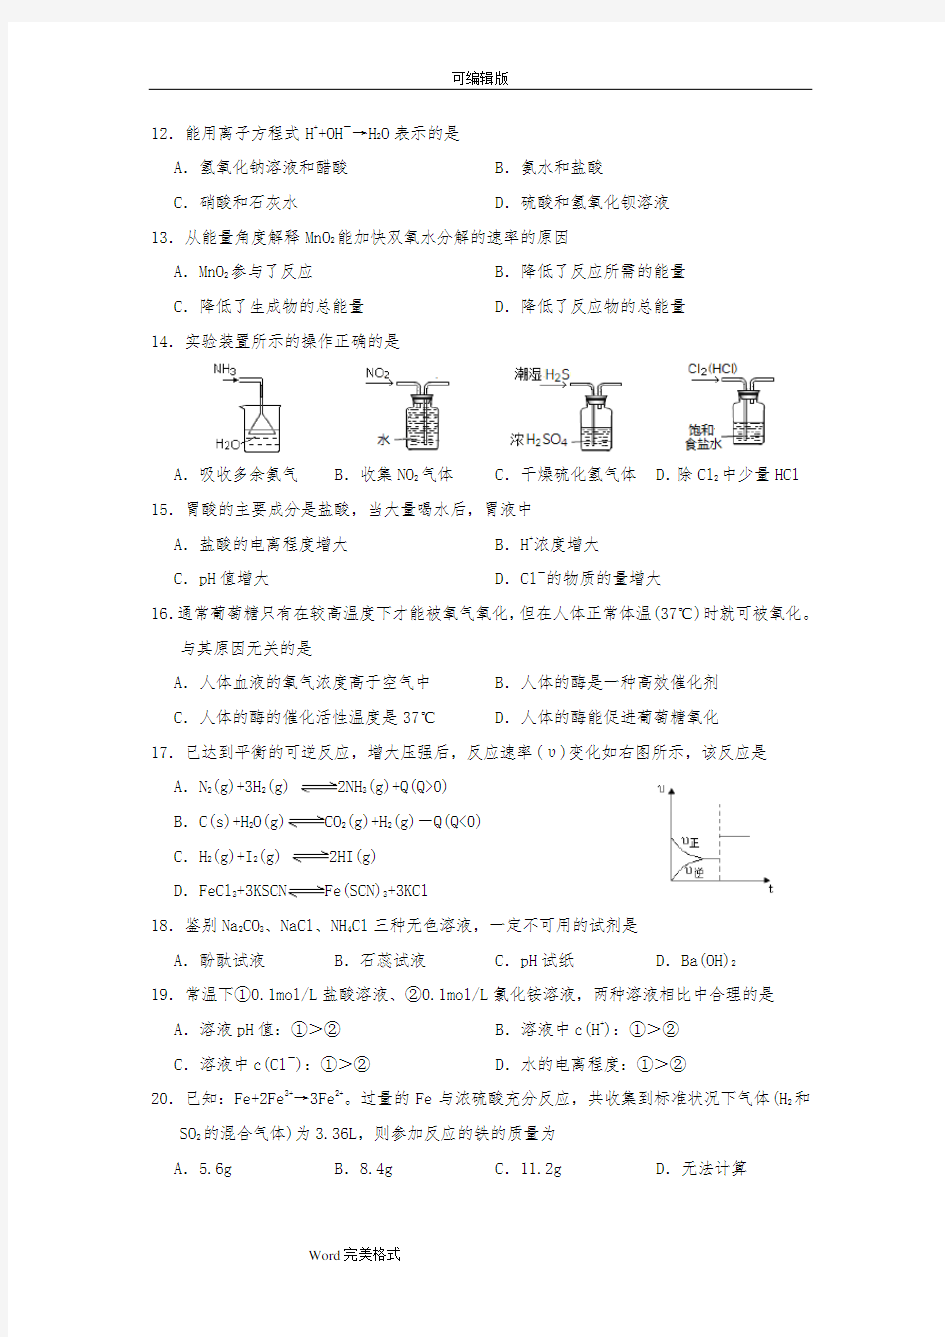 上海化学高中一年级期末考试卷(试卷与答案)